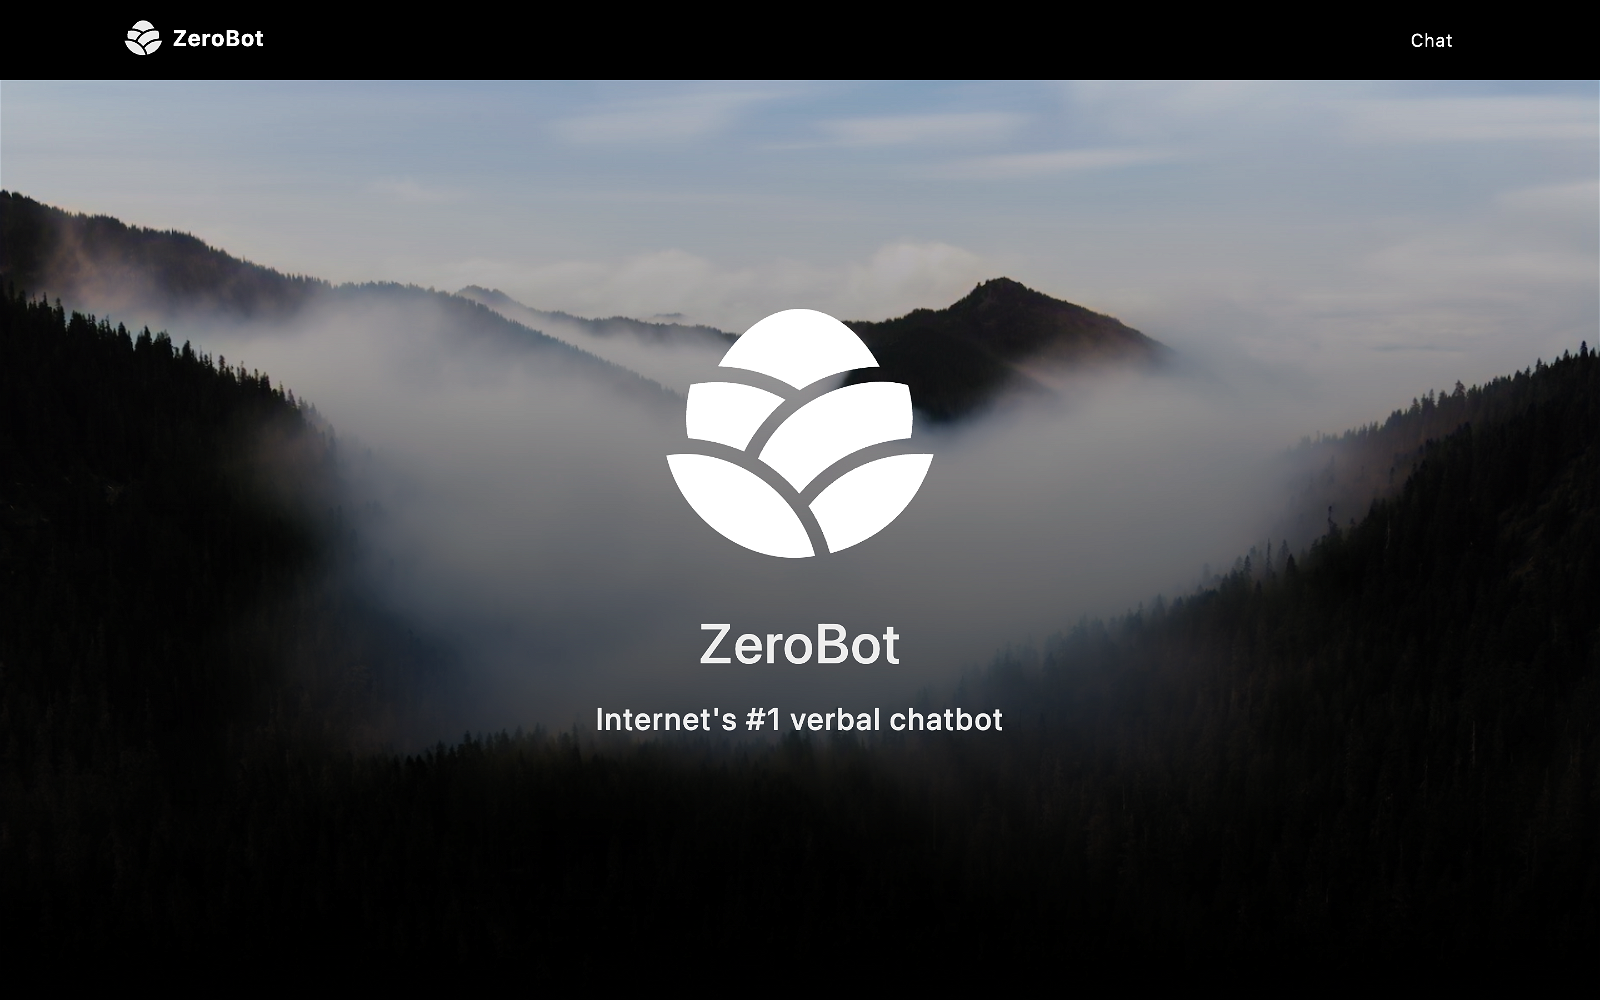 Zerobot website